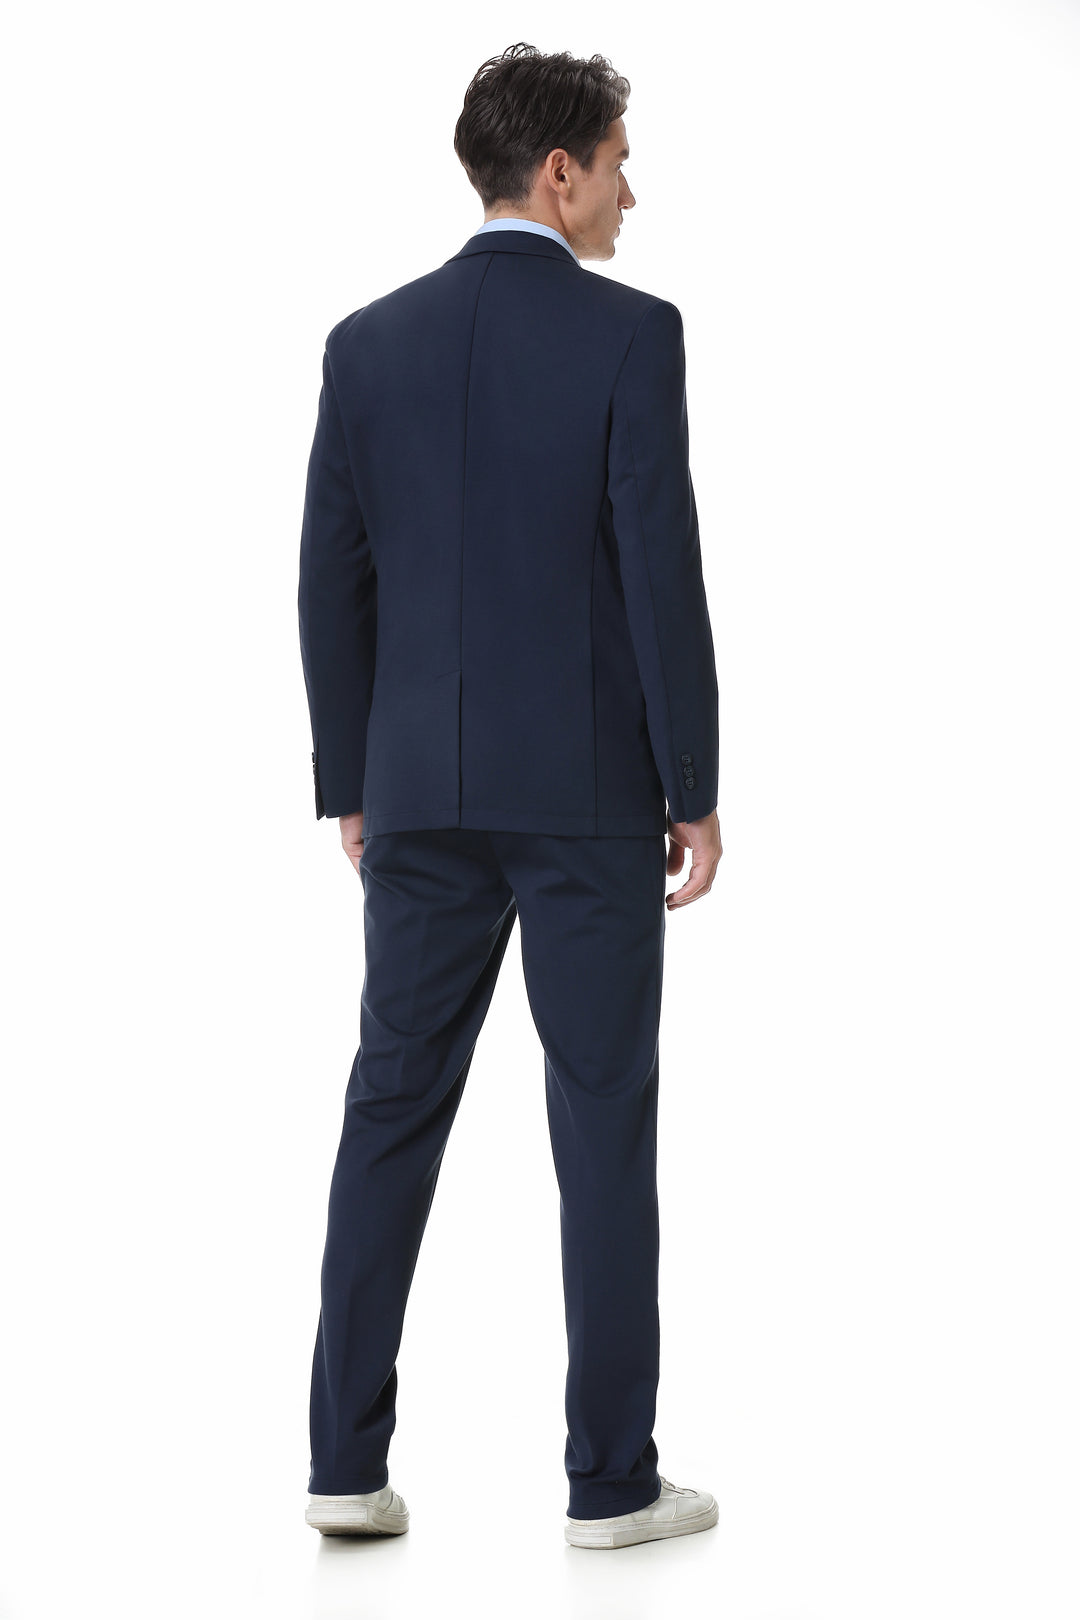 Hechter Paris X-Tech Stretch Suit Separate Pant